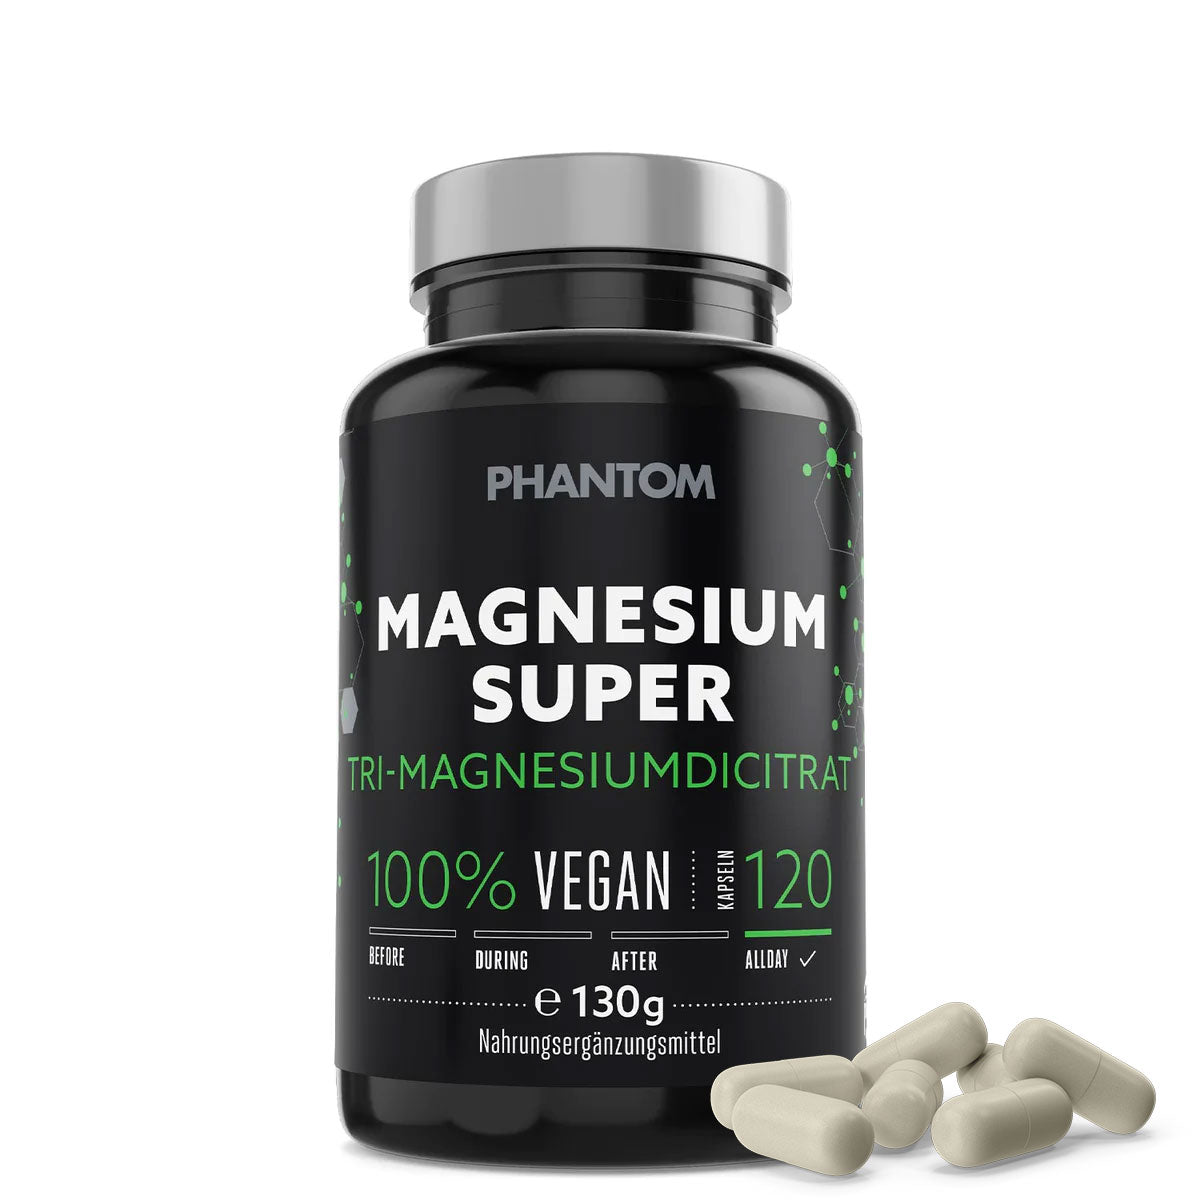 Phantom Magnesium Super capsules for better regeneration in martial arts.